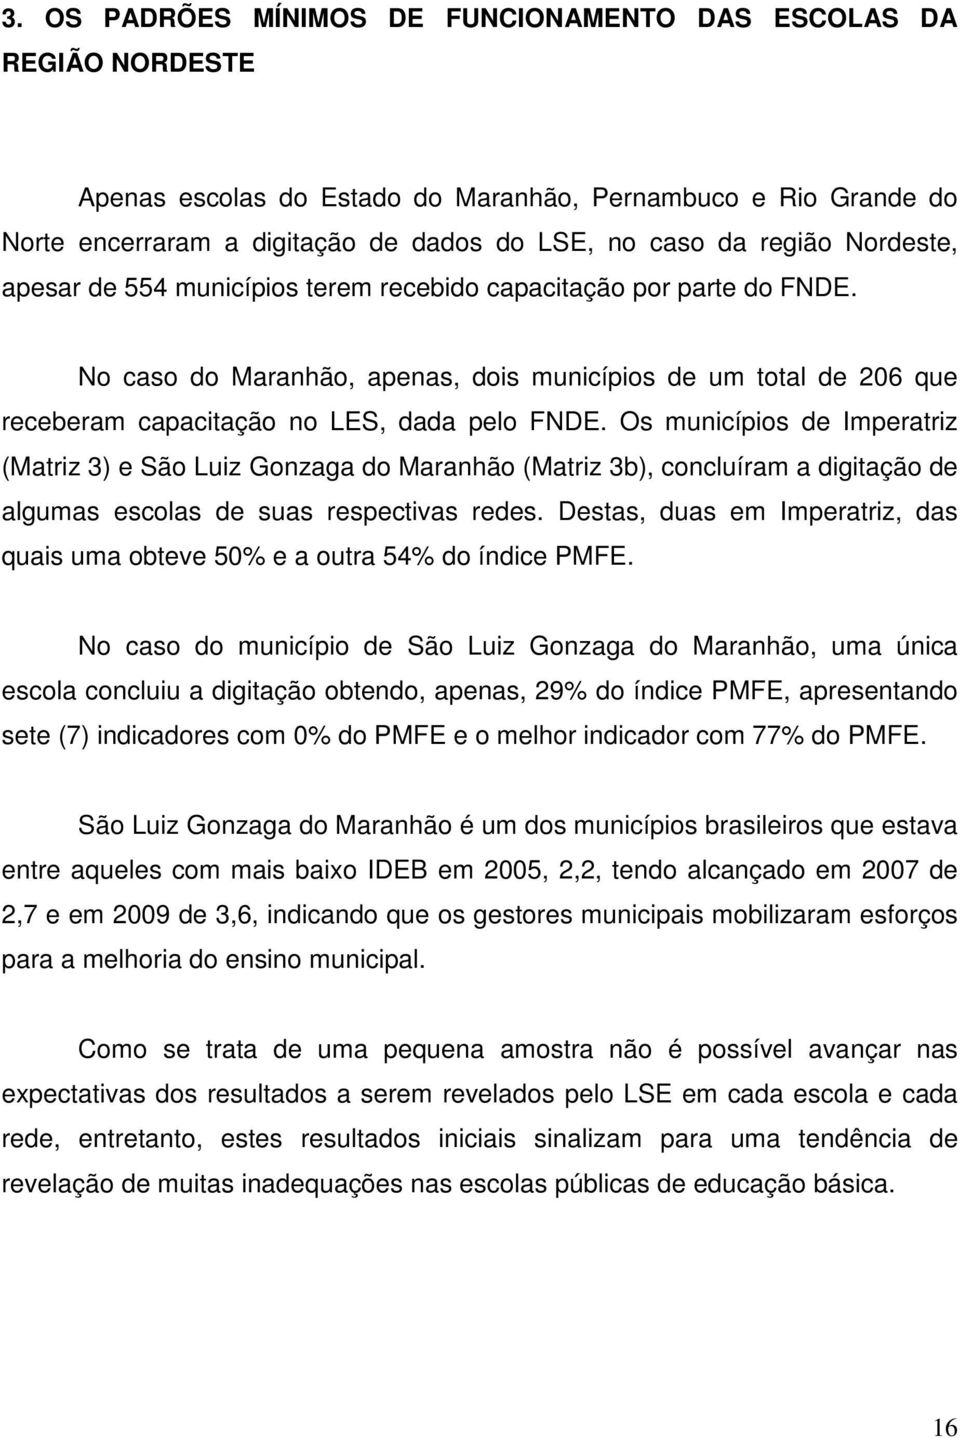 Os municípios de Imperatriz (Matriz 3) e São Luiz Gonzaga do Maranhão (Matriz 3b), concluíram a digitação de algumas escolas de suas respectivas redes.